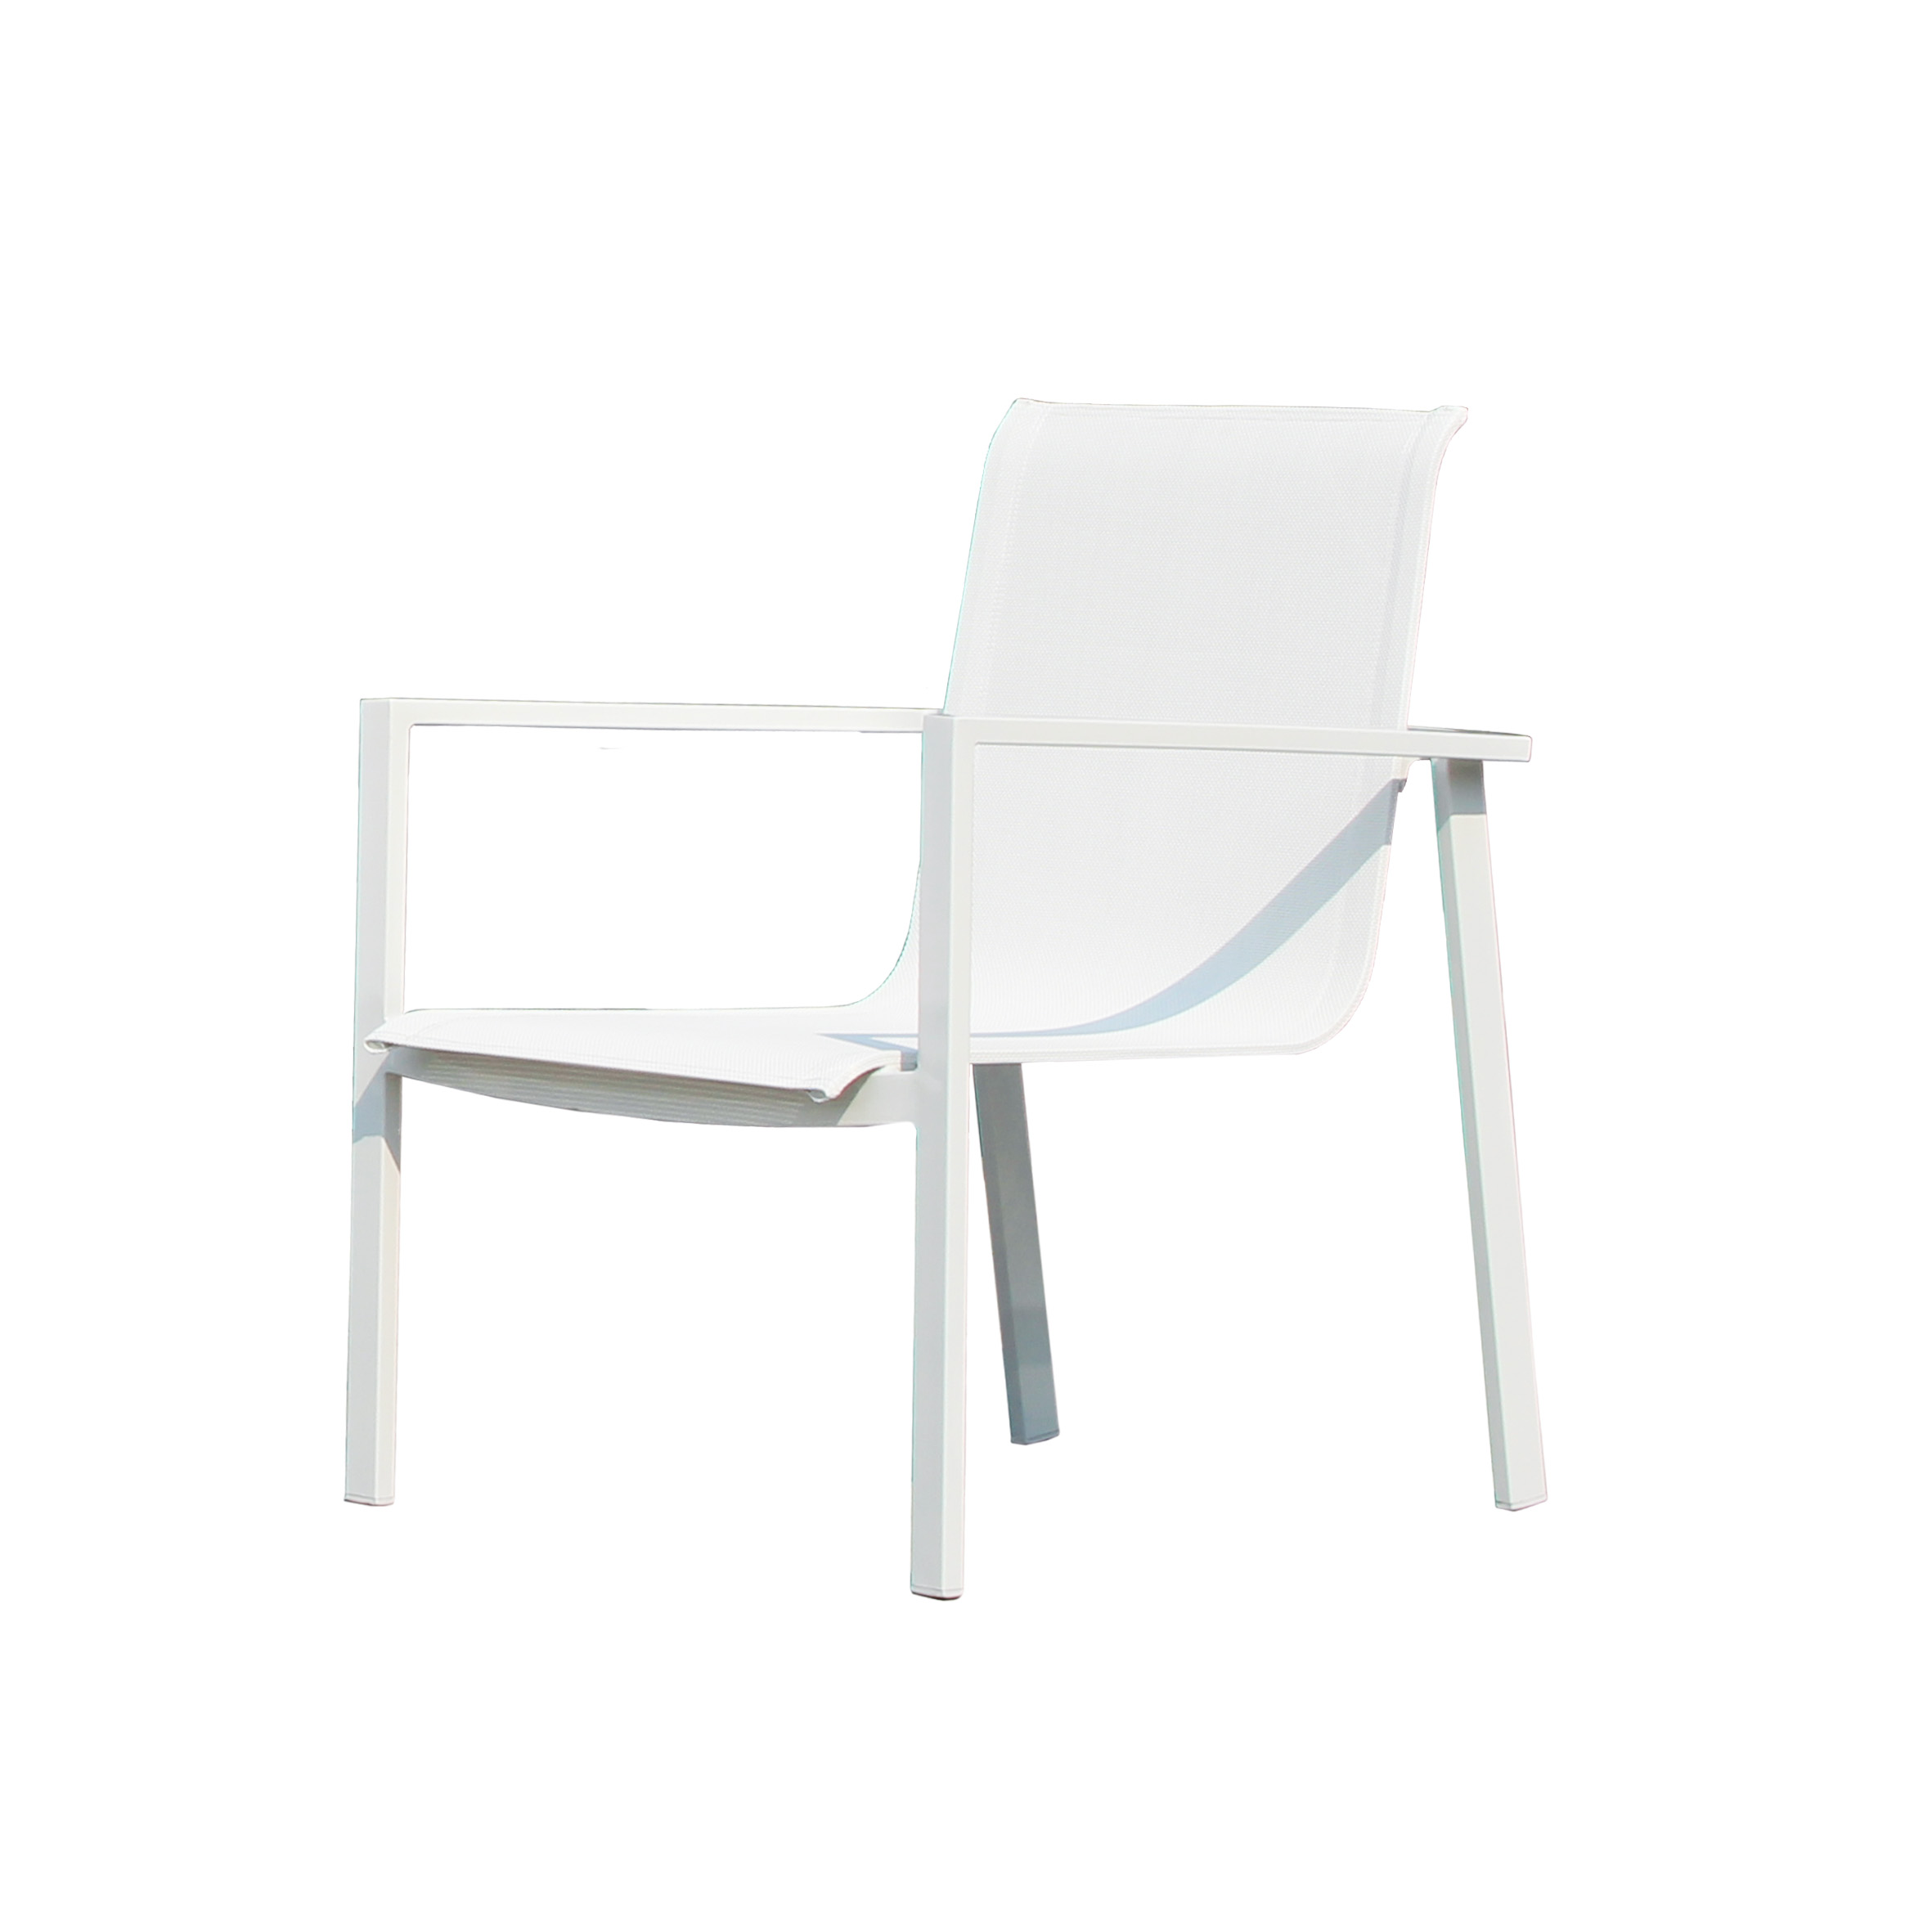 Valencia textile leisure chair S1